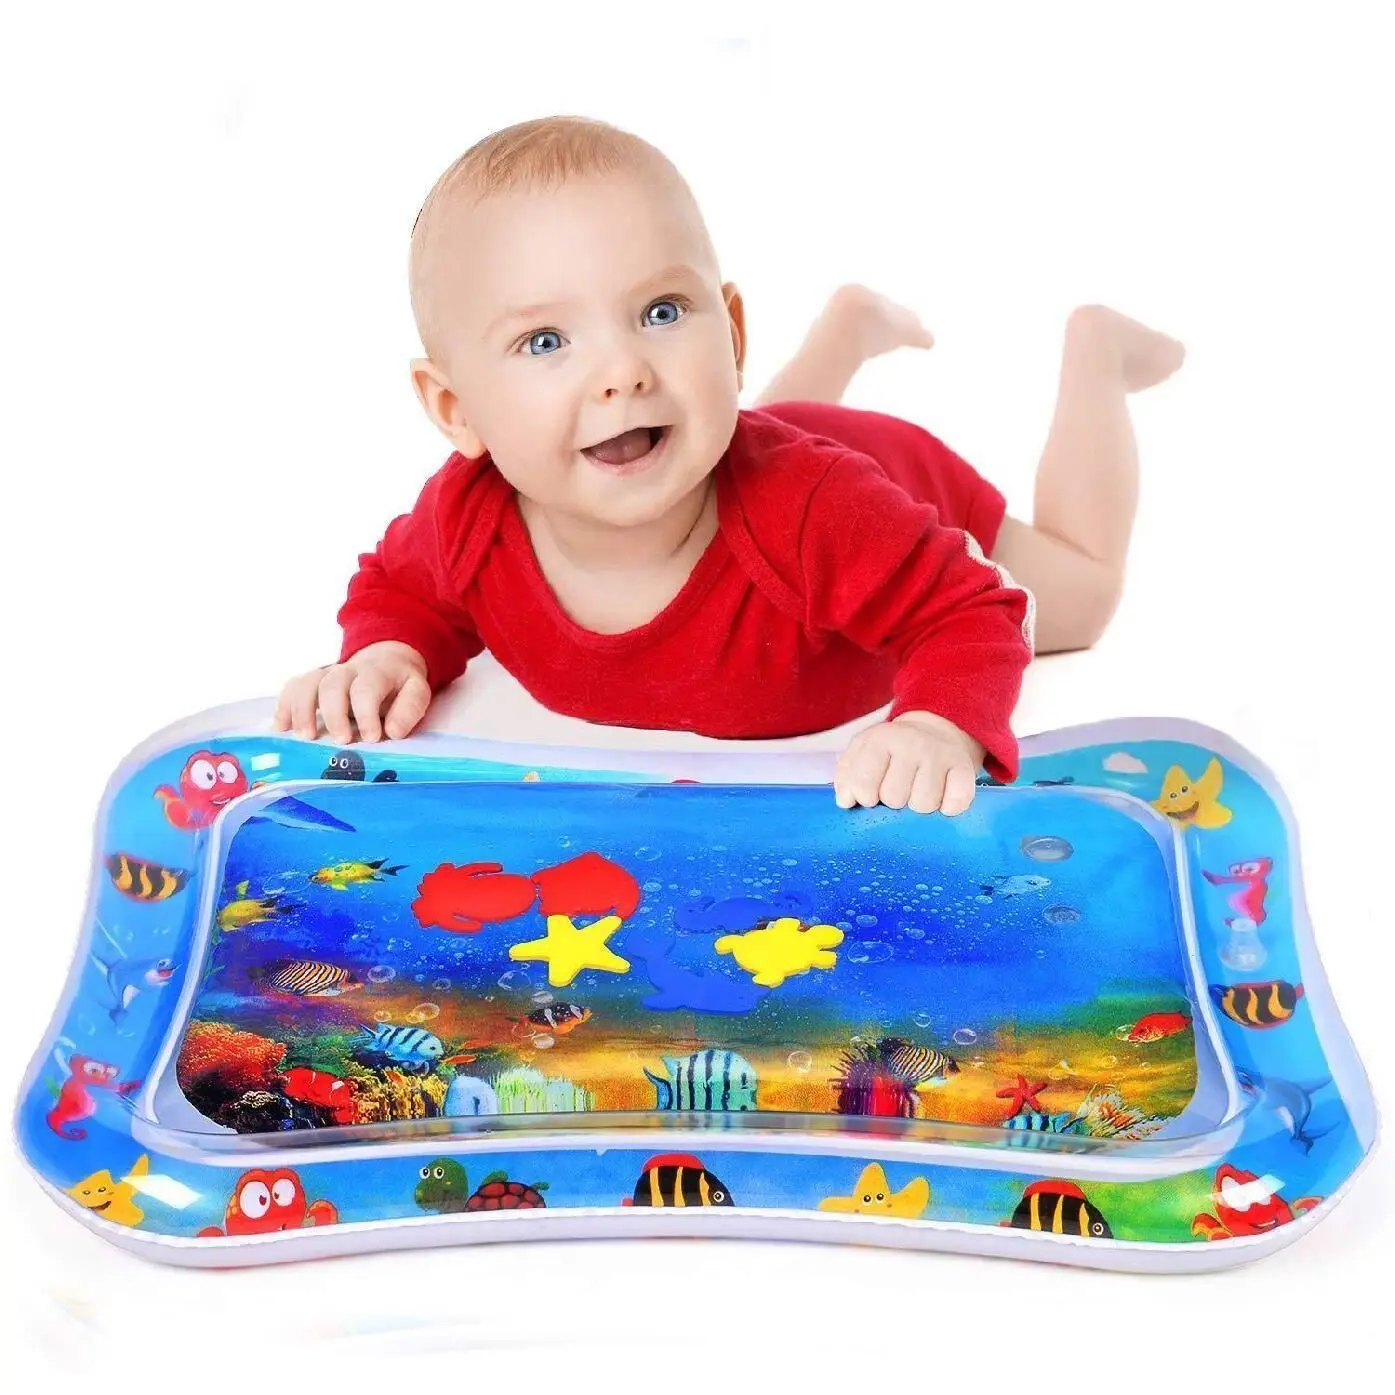 الأطفال حصيرة الطفل المياه تلعب حصيرة نفخ لعب الاطفال رشاقته البلاستيكية Playmat طفل نشاط اللعب مركز حصيرة الماء للأطفال